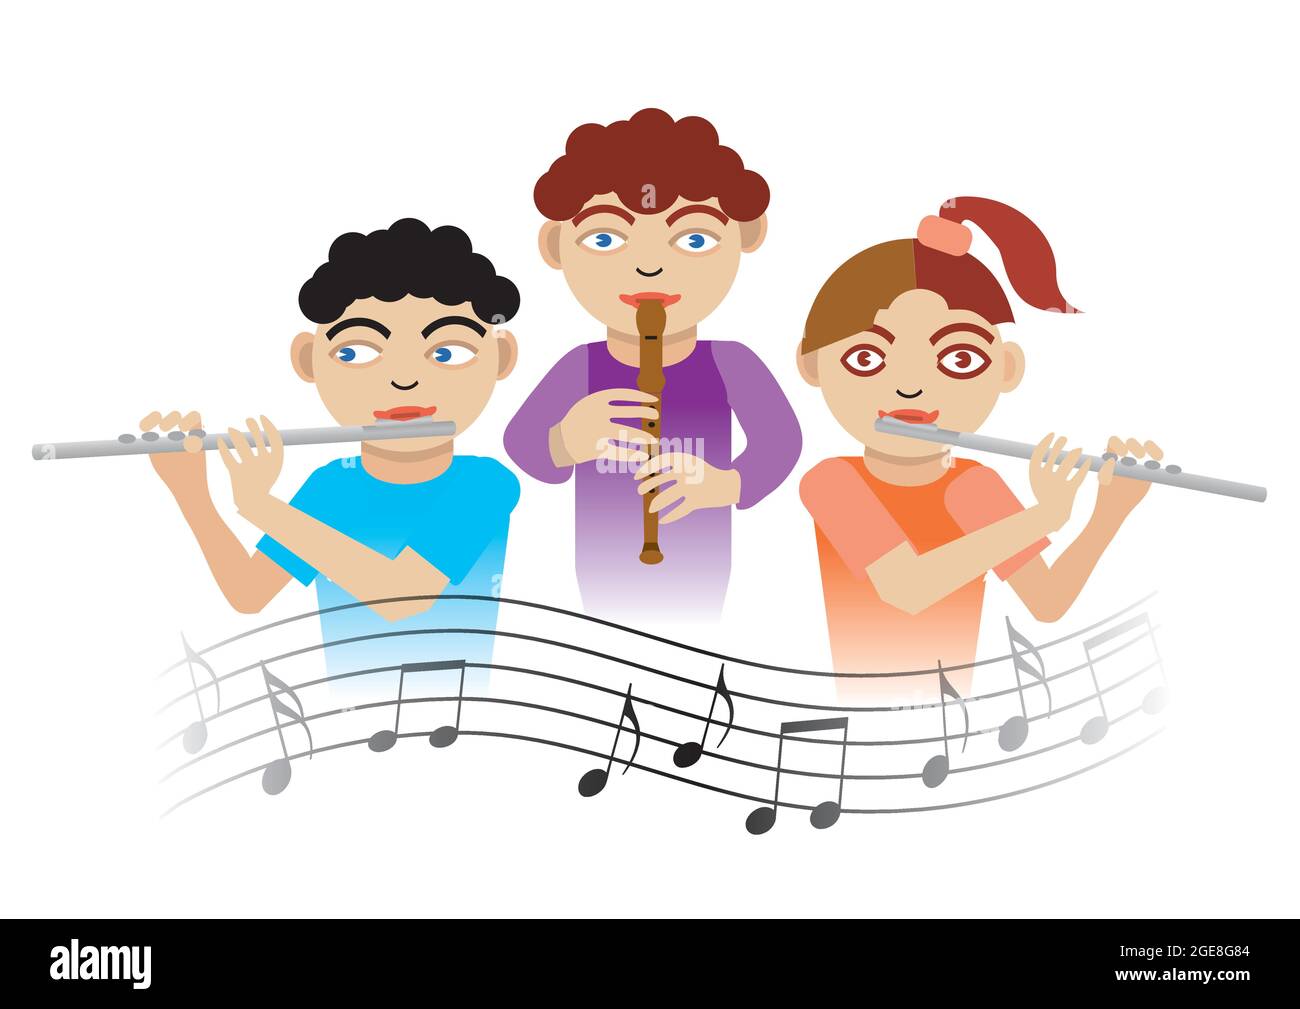 Bambini che giocano sul flauto. Illustrazione di tre bambini con flauto e  note musicali.Vector disponibile Immagine e Vettoriale - Alamy